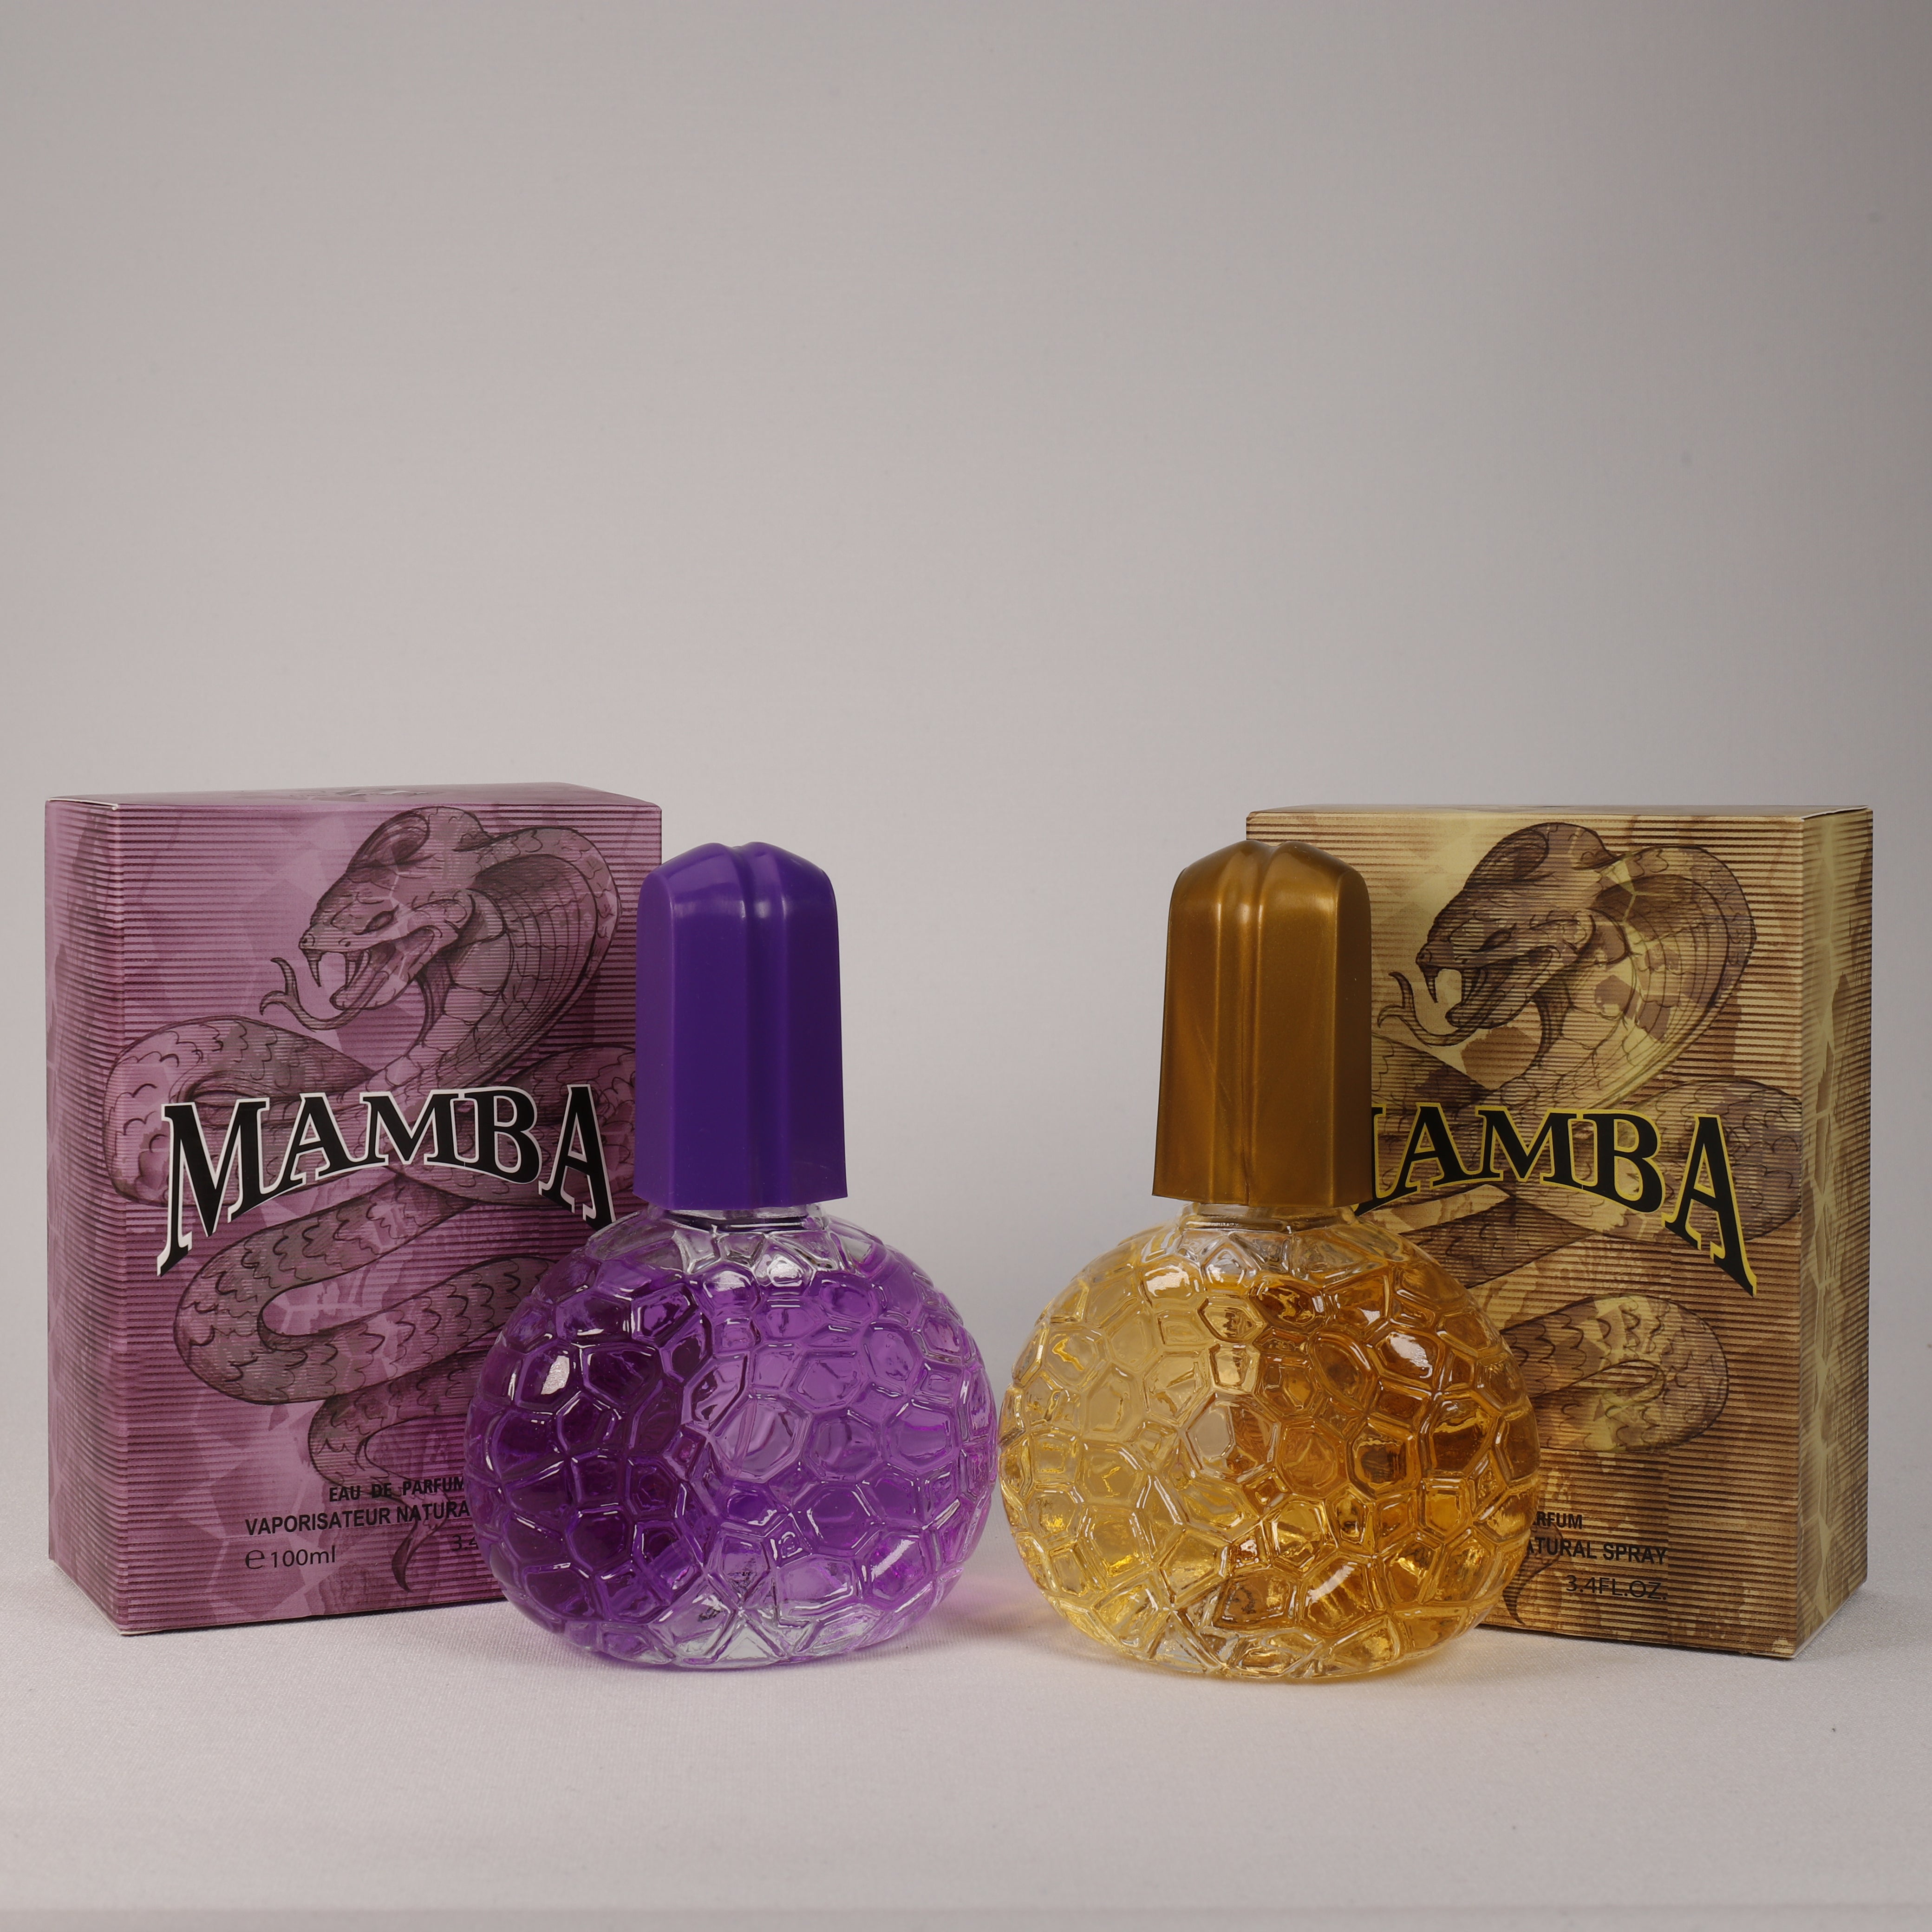 Mamba Gold für Damen, Vaporizer mit natürlichem Spray, 100 ml, Duft, TOP Parfüm, NEU OVP